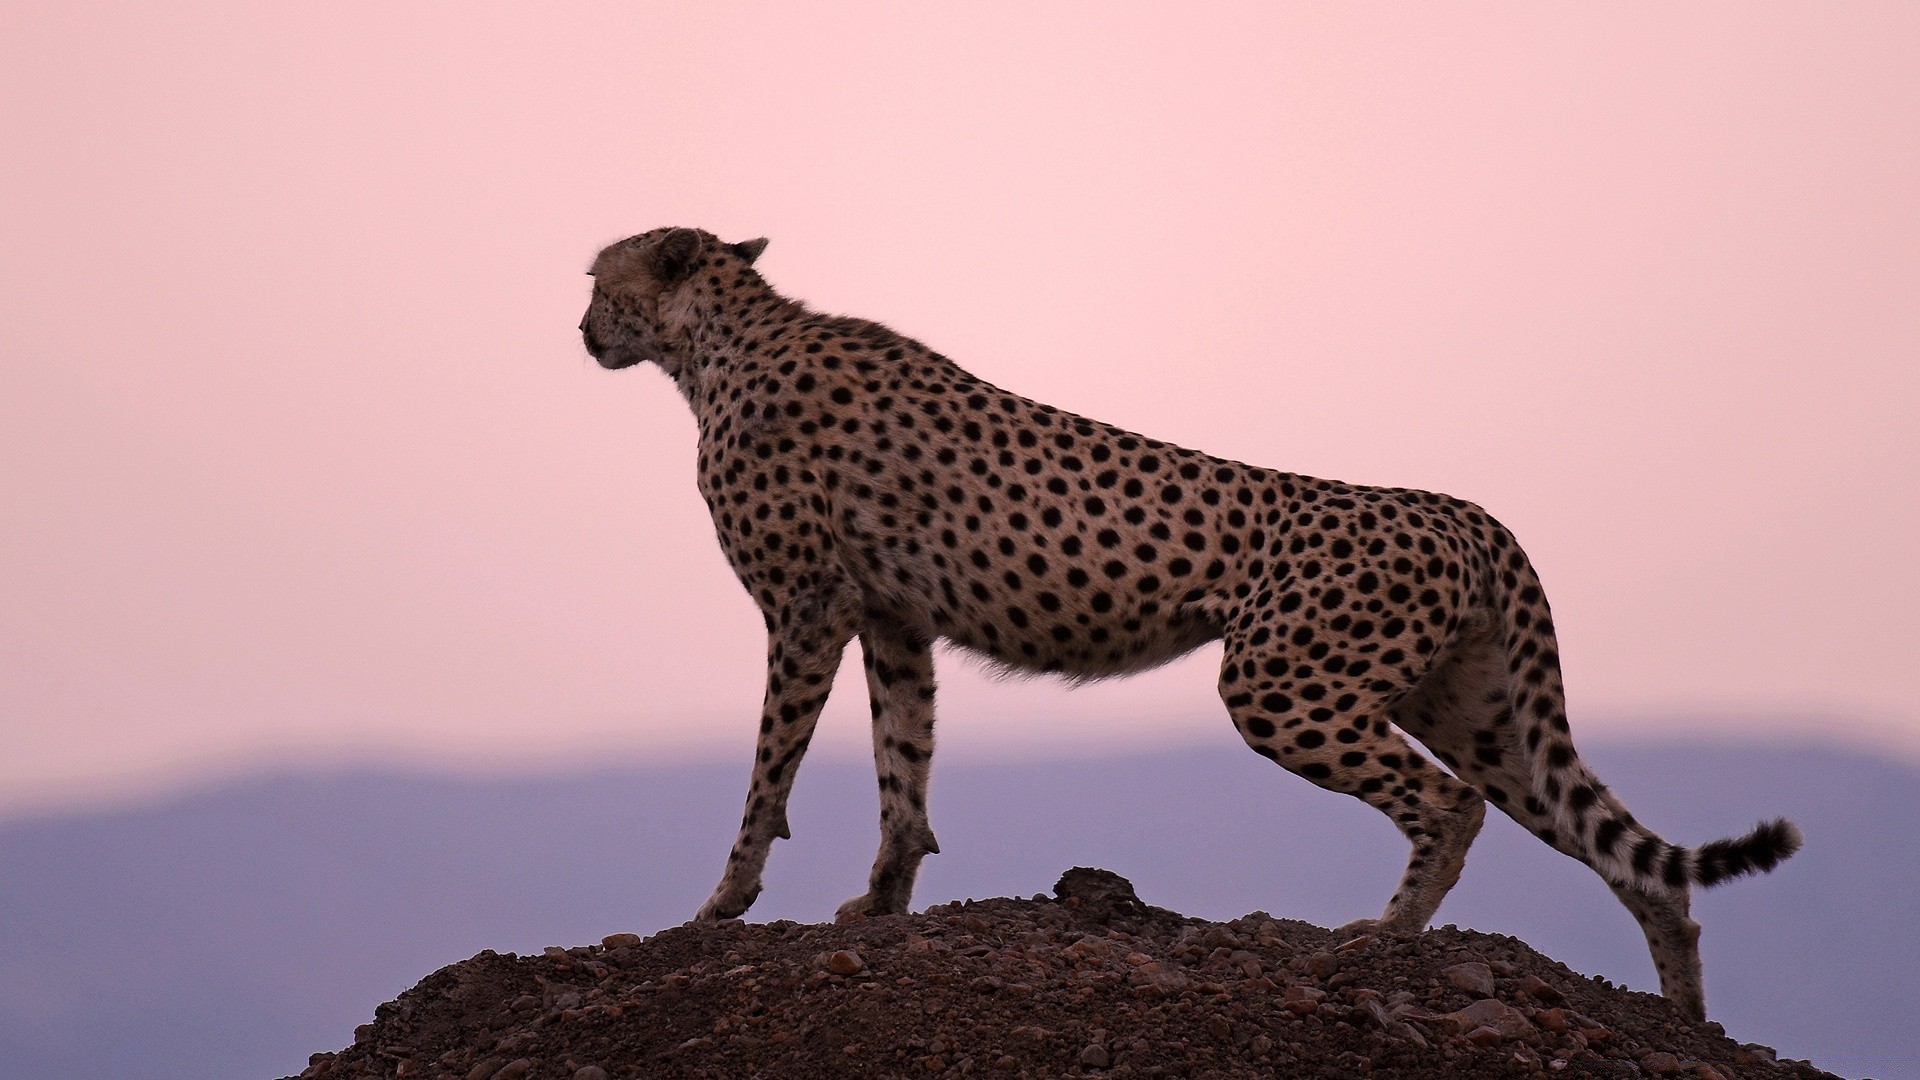 животные дикой природы млекопитающее кошка сафари гепард леопард животное дикий природа зоопарк хищник